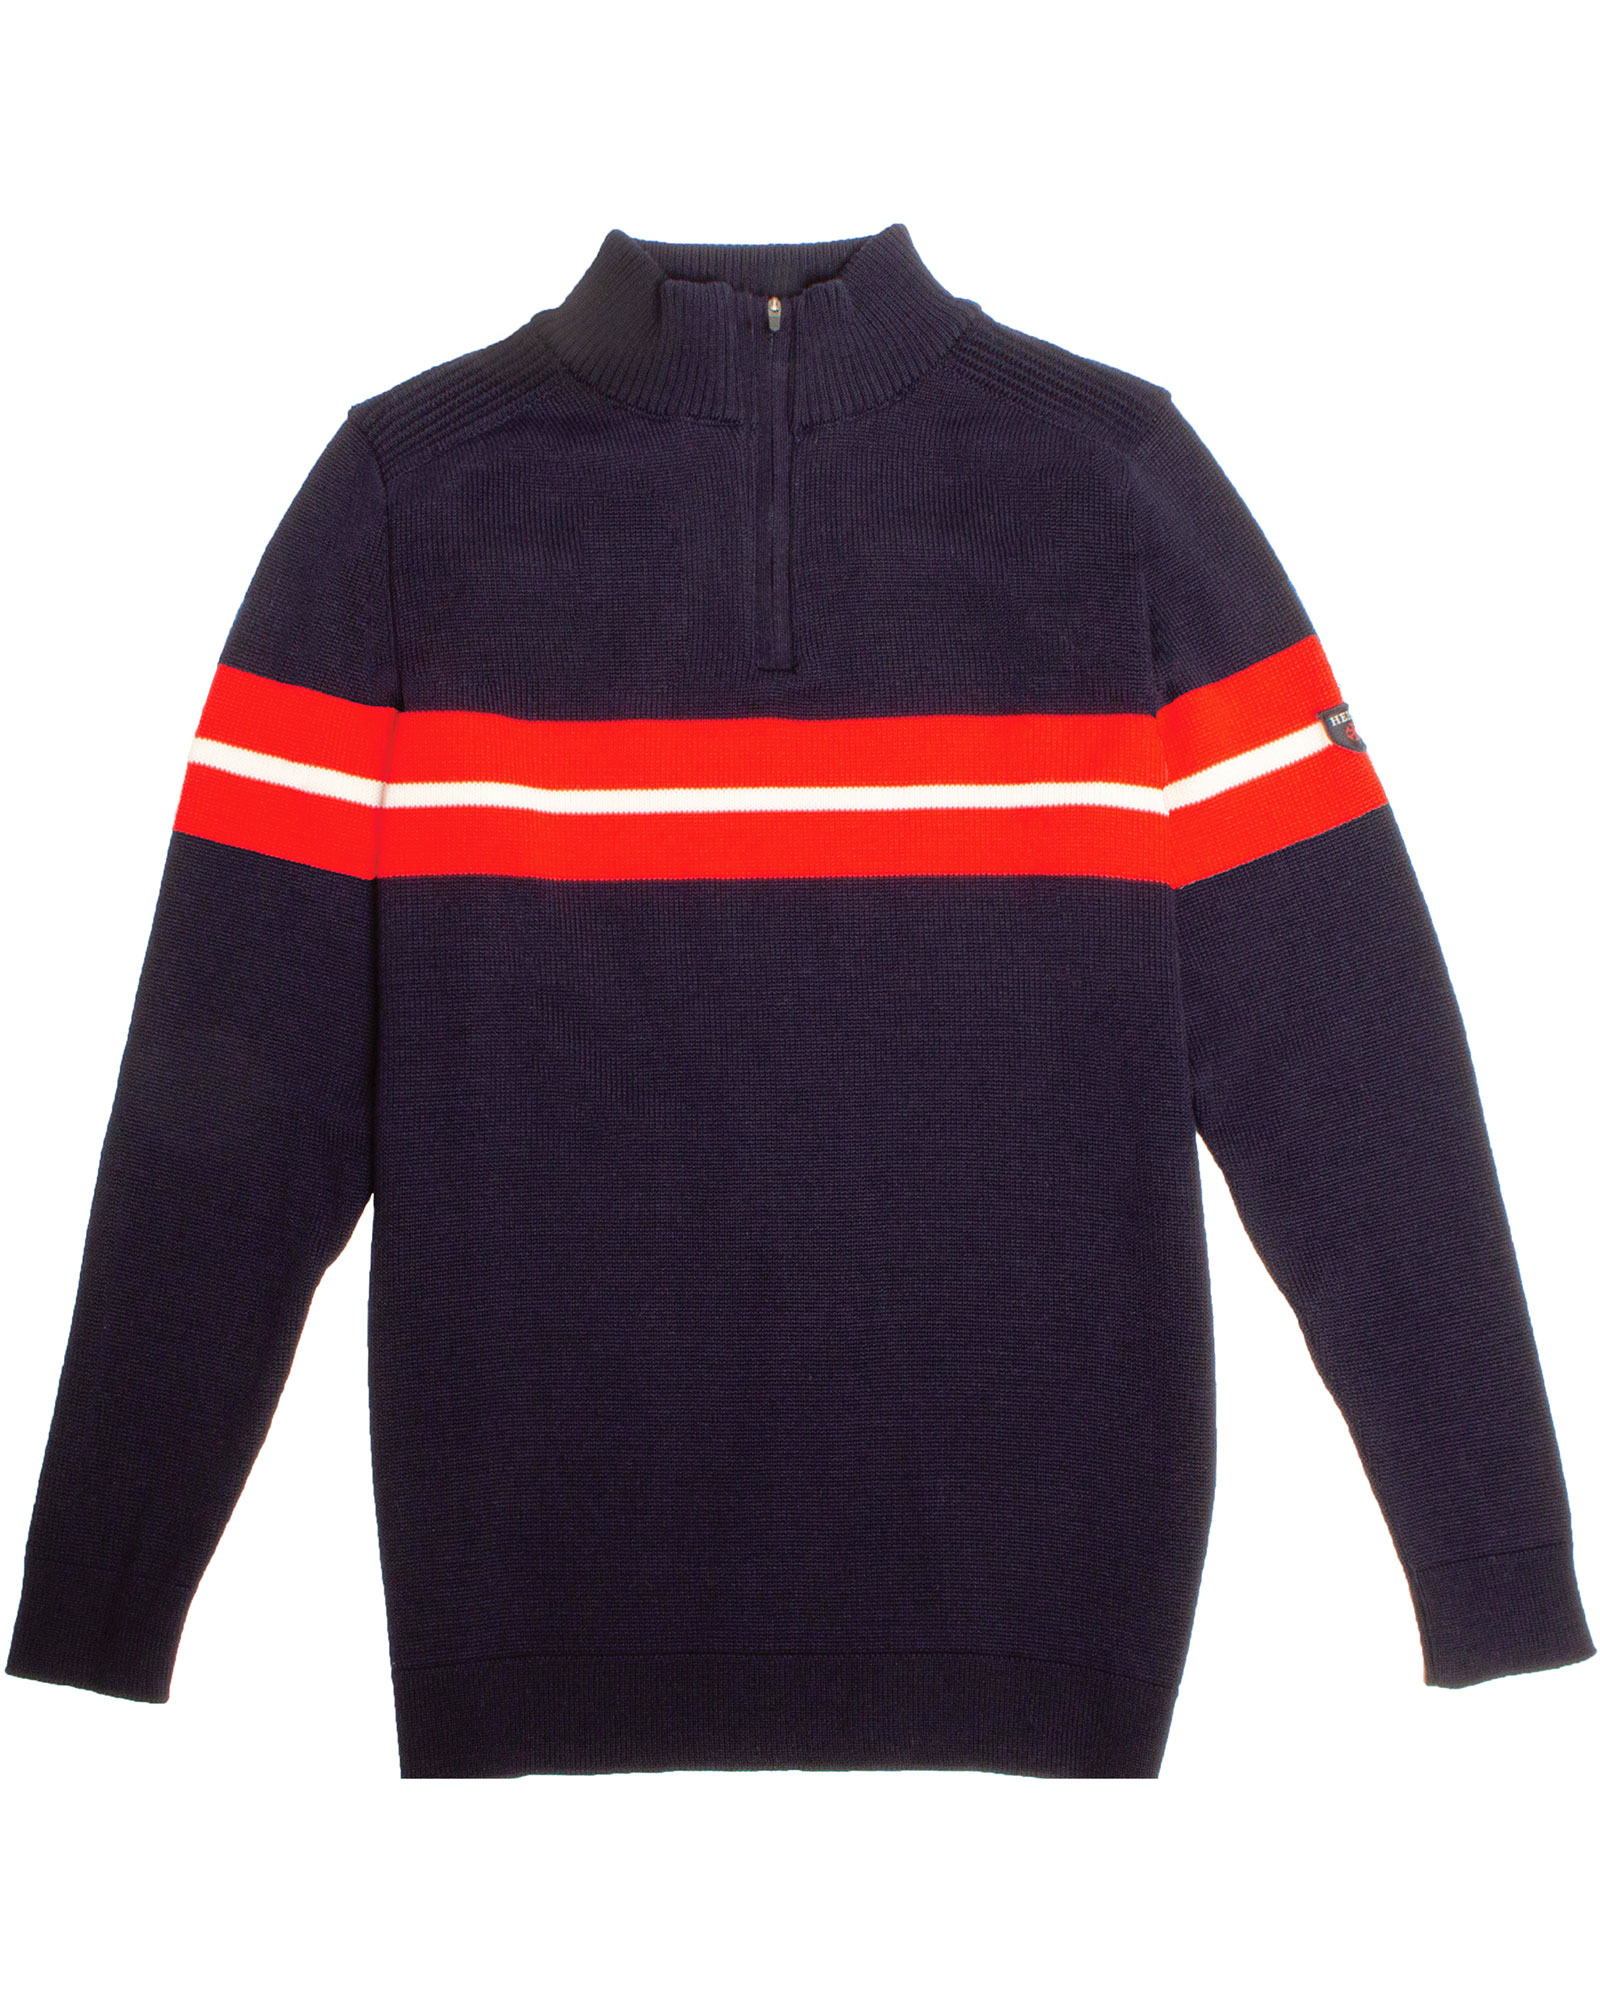 Henjl Carve Half Zip Men’s Merino Sweater - Navy/Snow/Red S